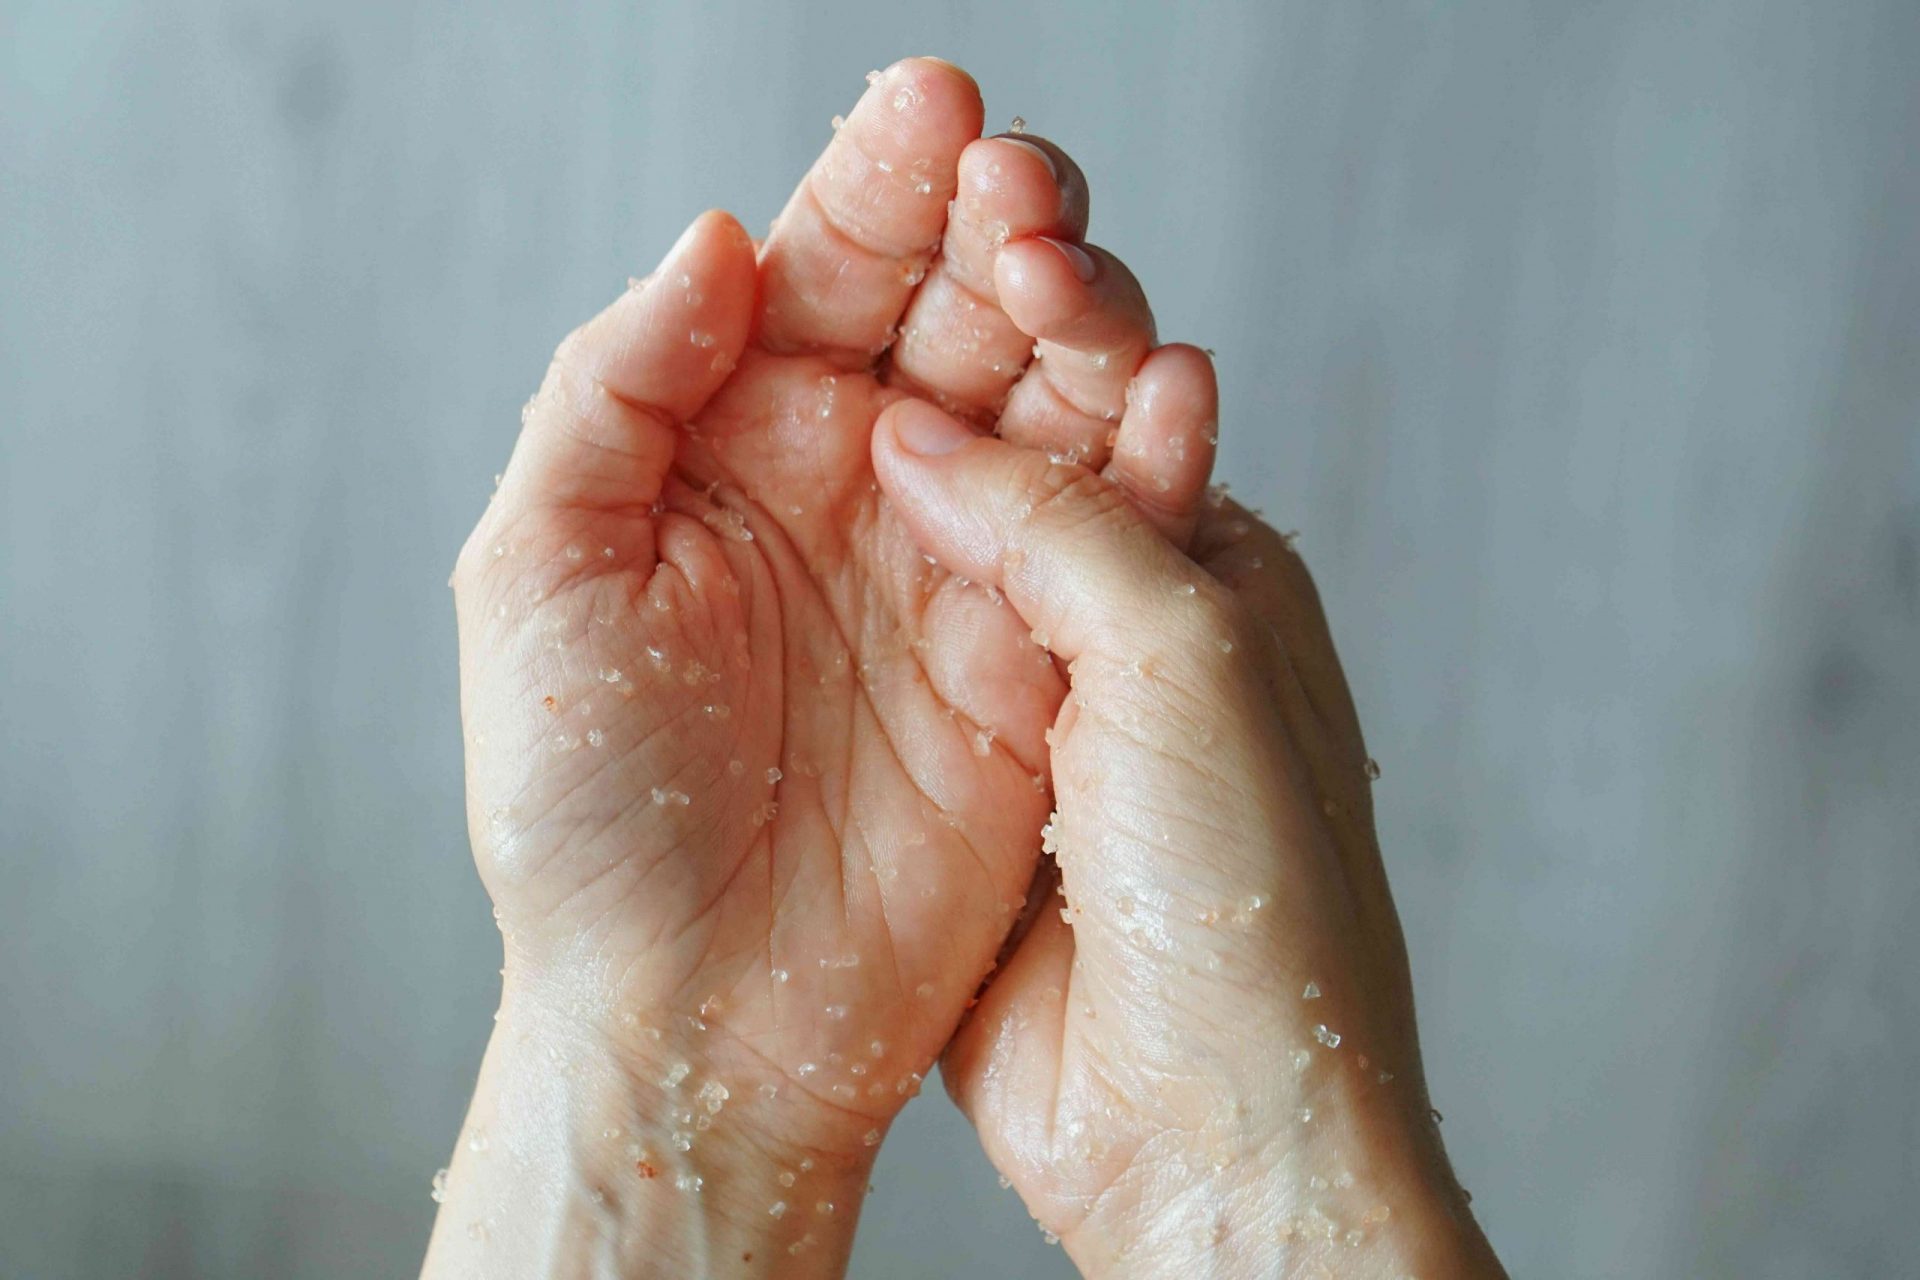 dos manos se frotan la mezcla de exfoliación casera con sal